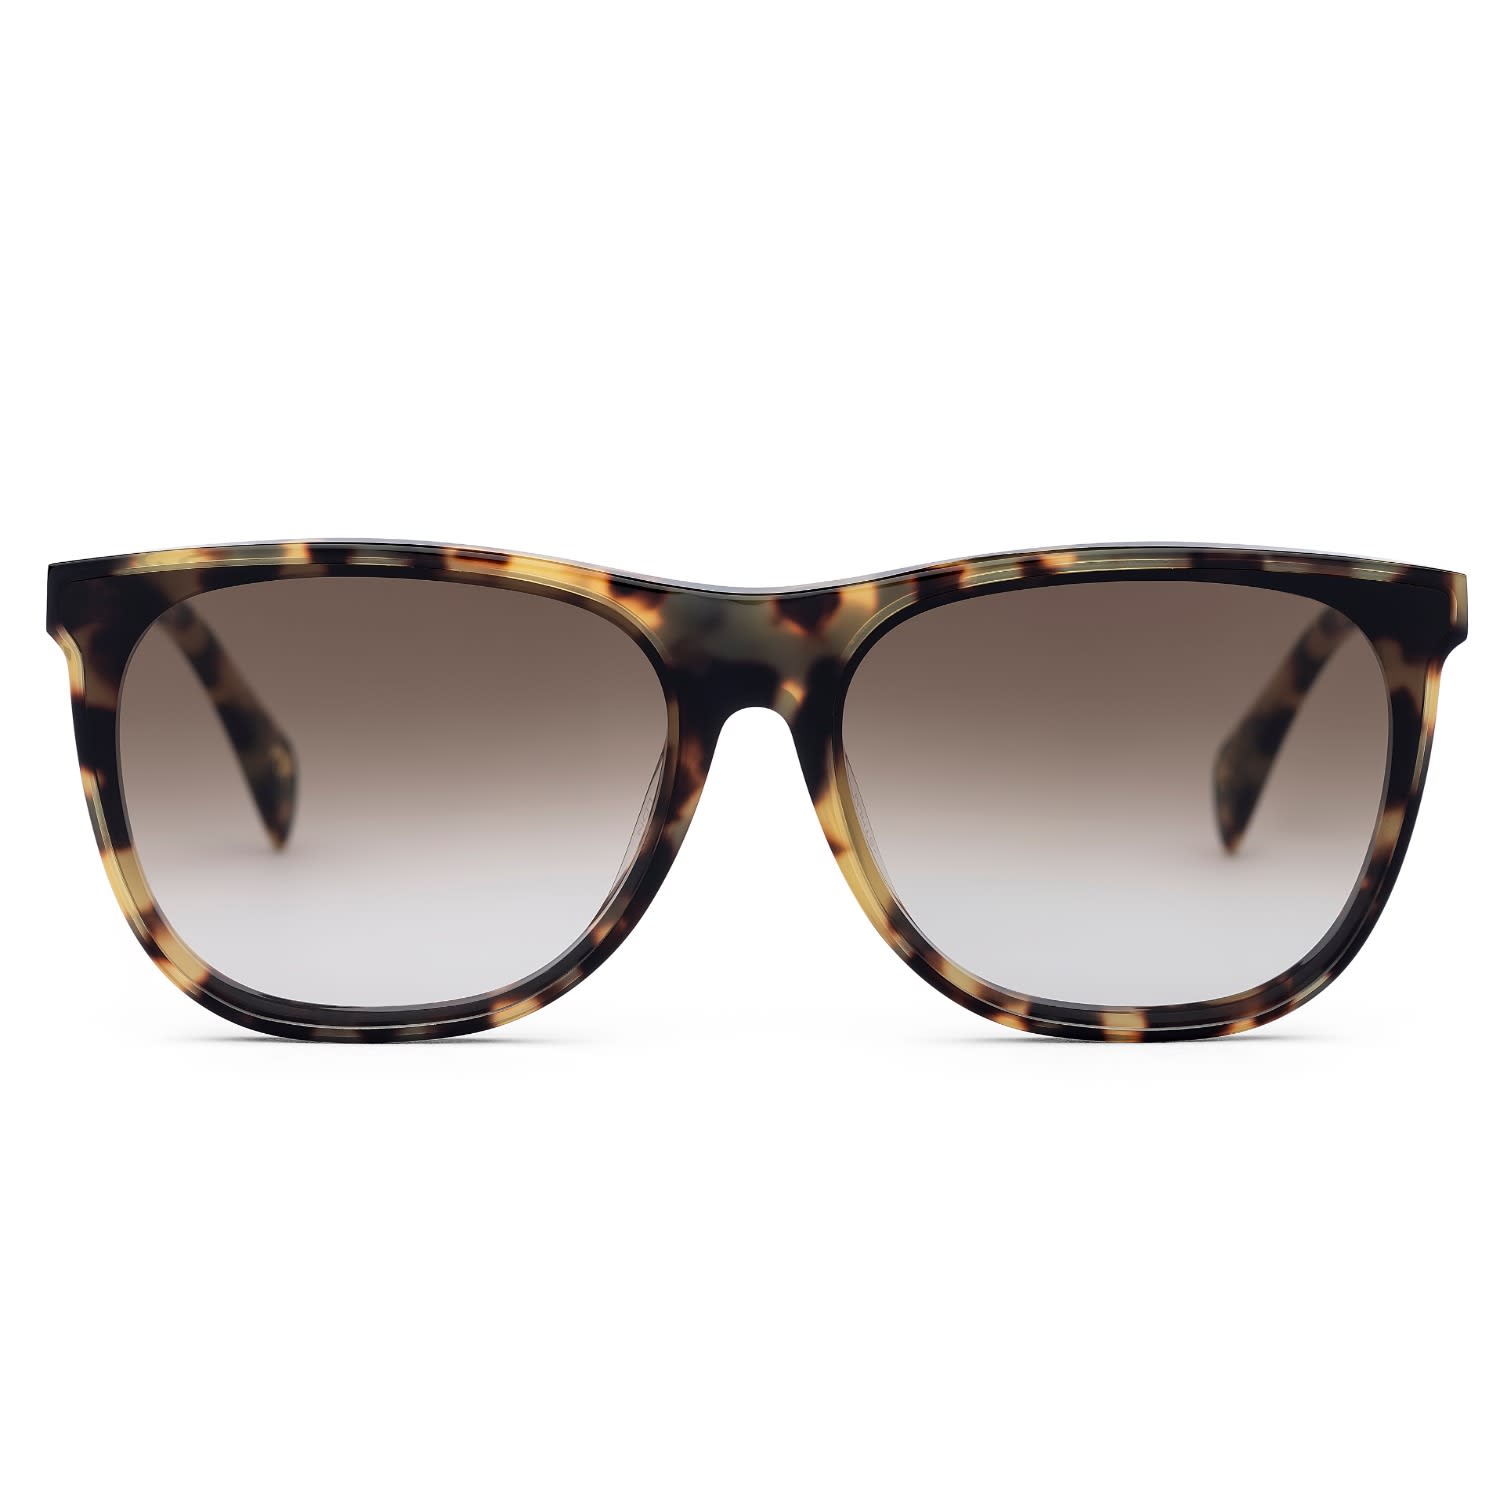 Havana Wayfarer Sunglasses Online